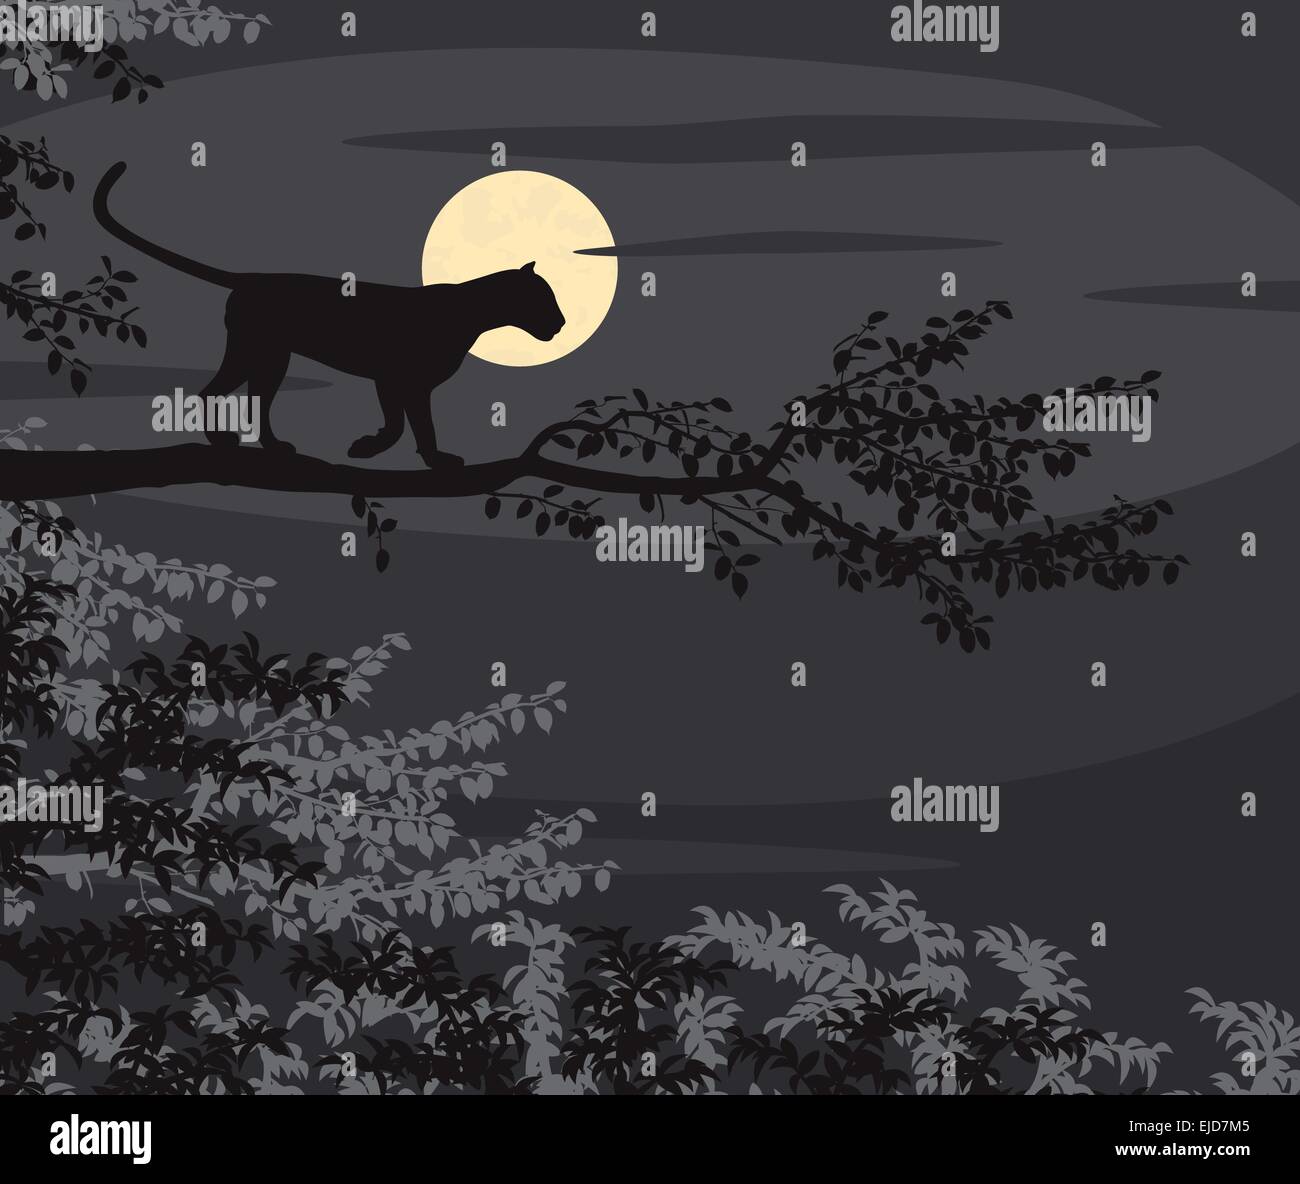 Spe8 découpe vecteur modifiable illustration d'un leopard sur une branche d'arbre découpé sur la lune dans la nuit Illustration de Vecteur